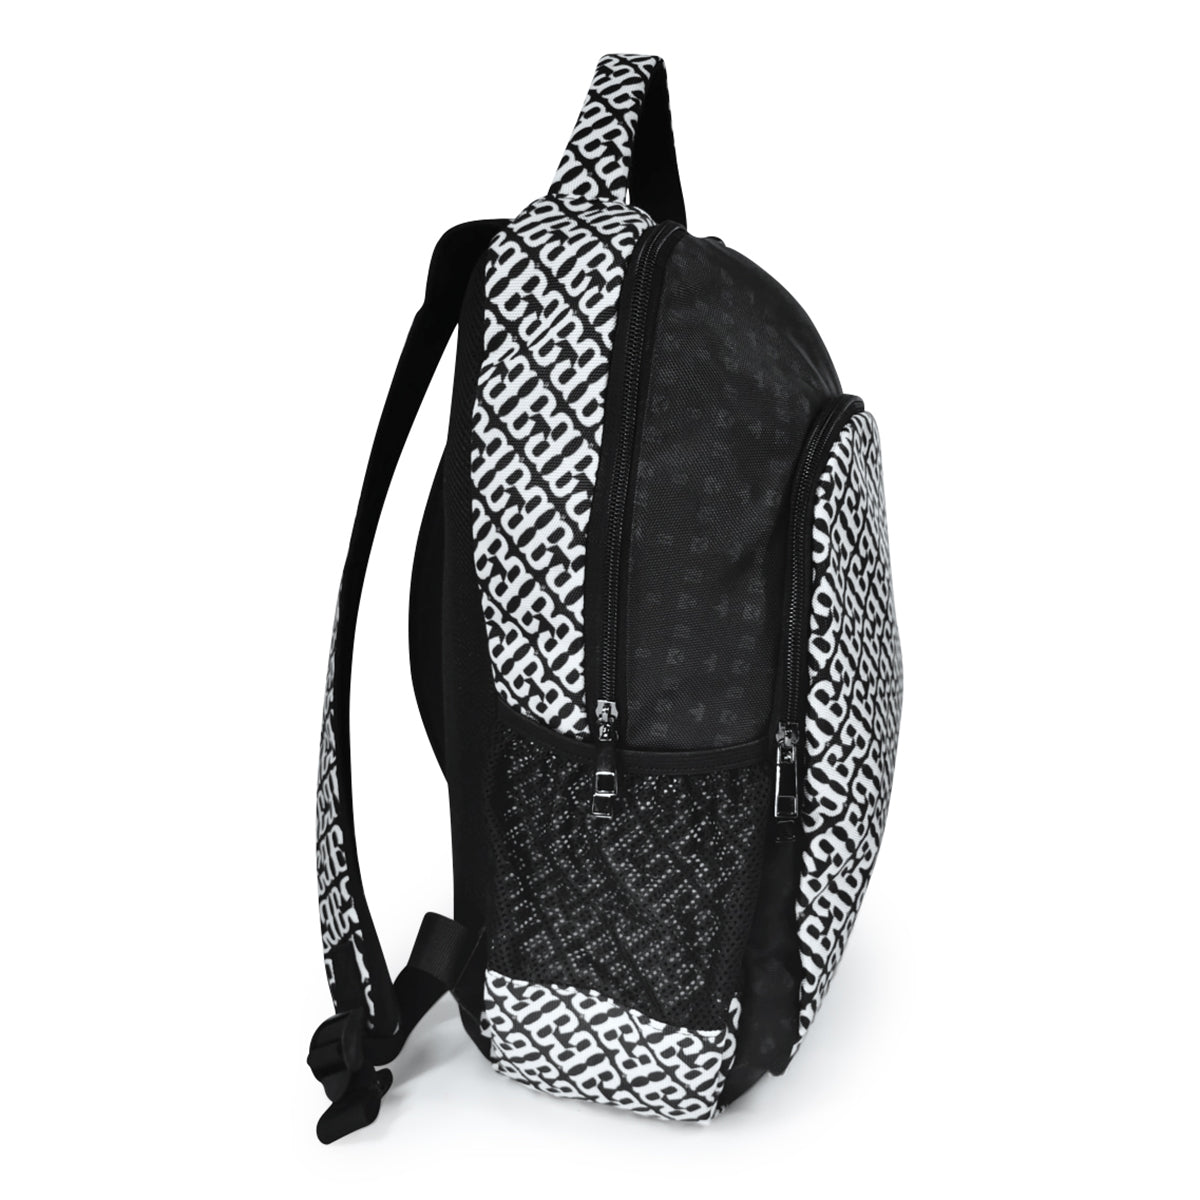 Black & White Barrier Breaker Multi-function Backpack